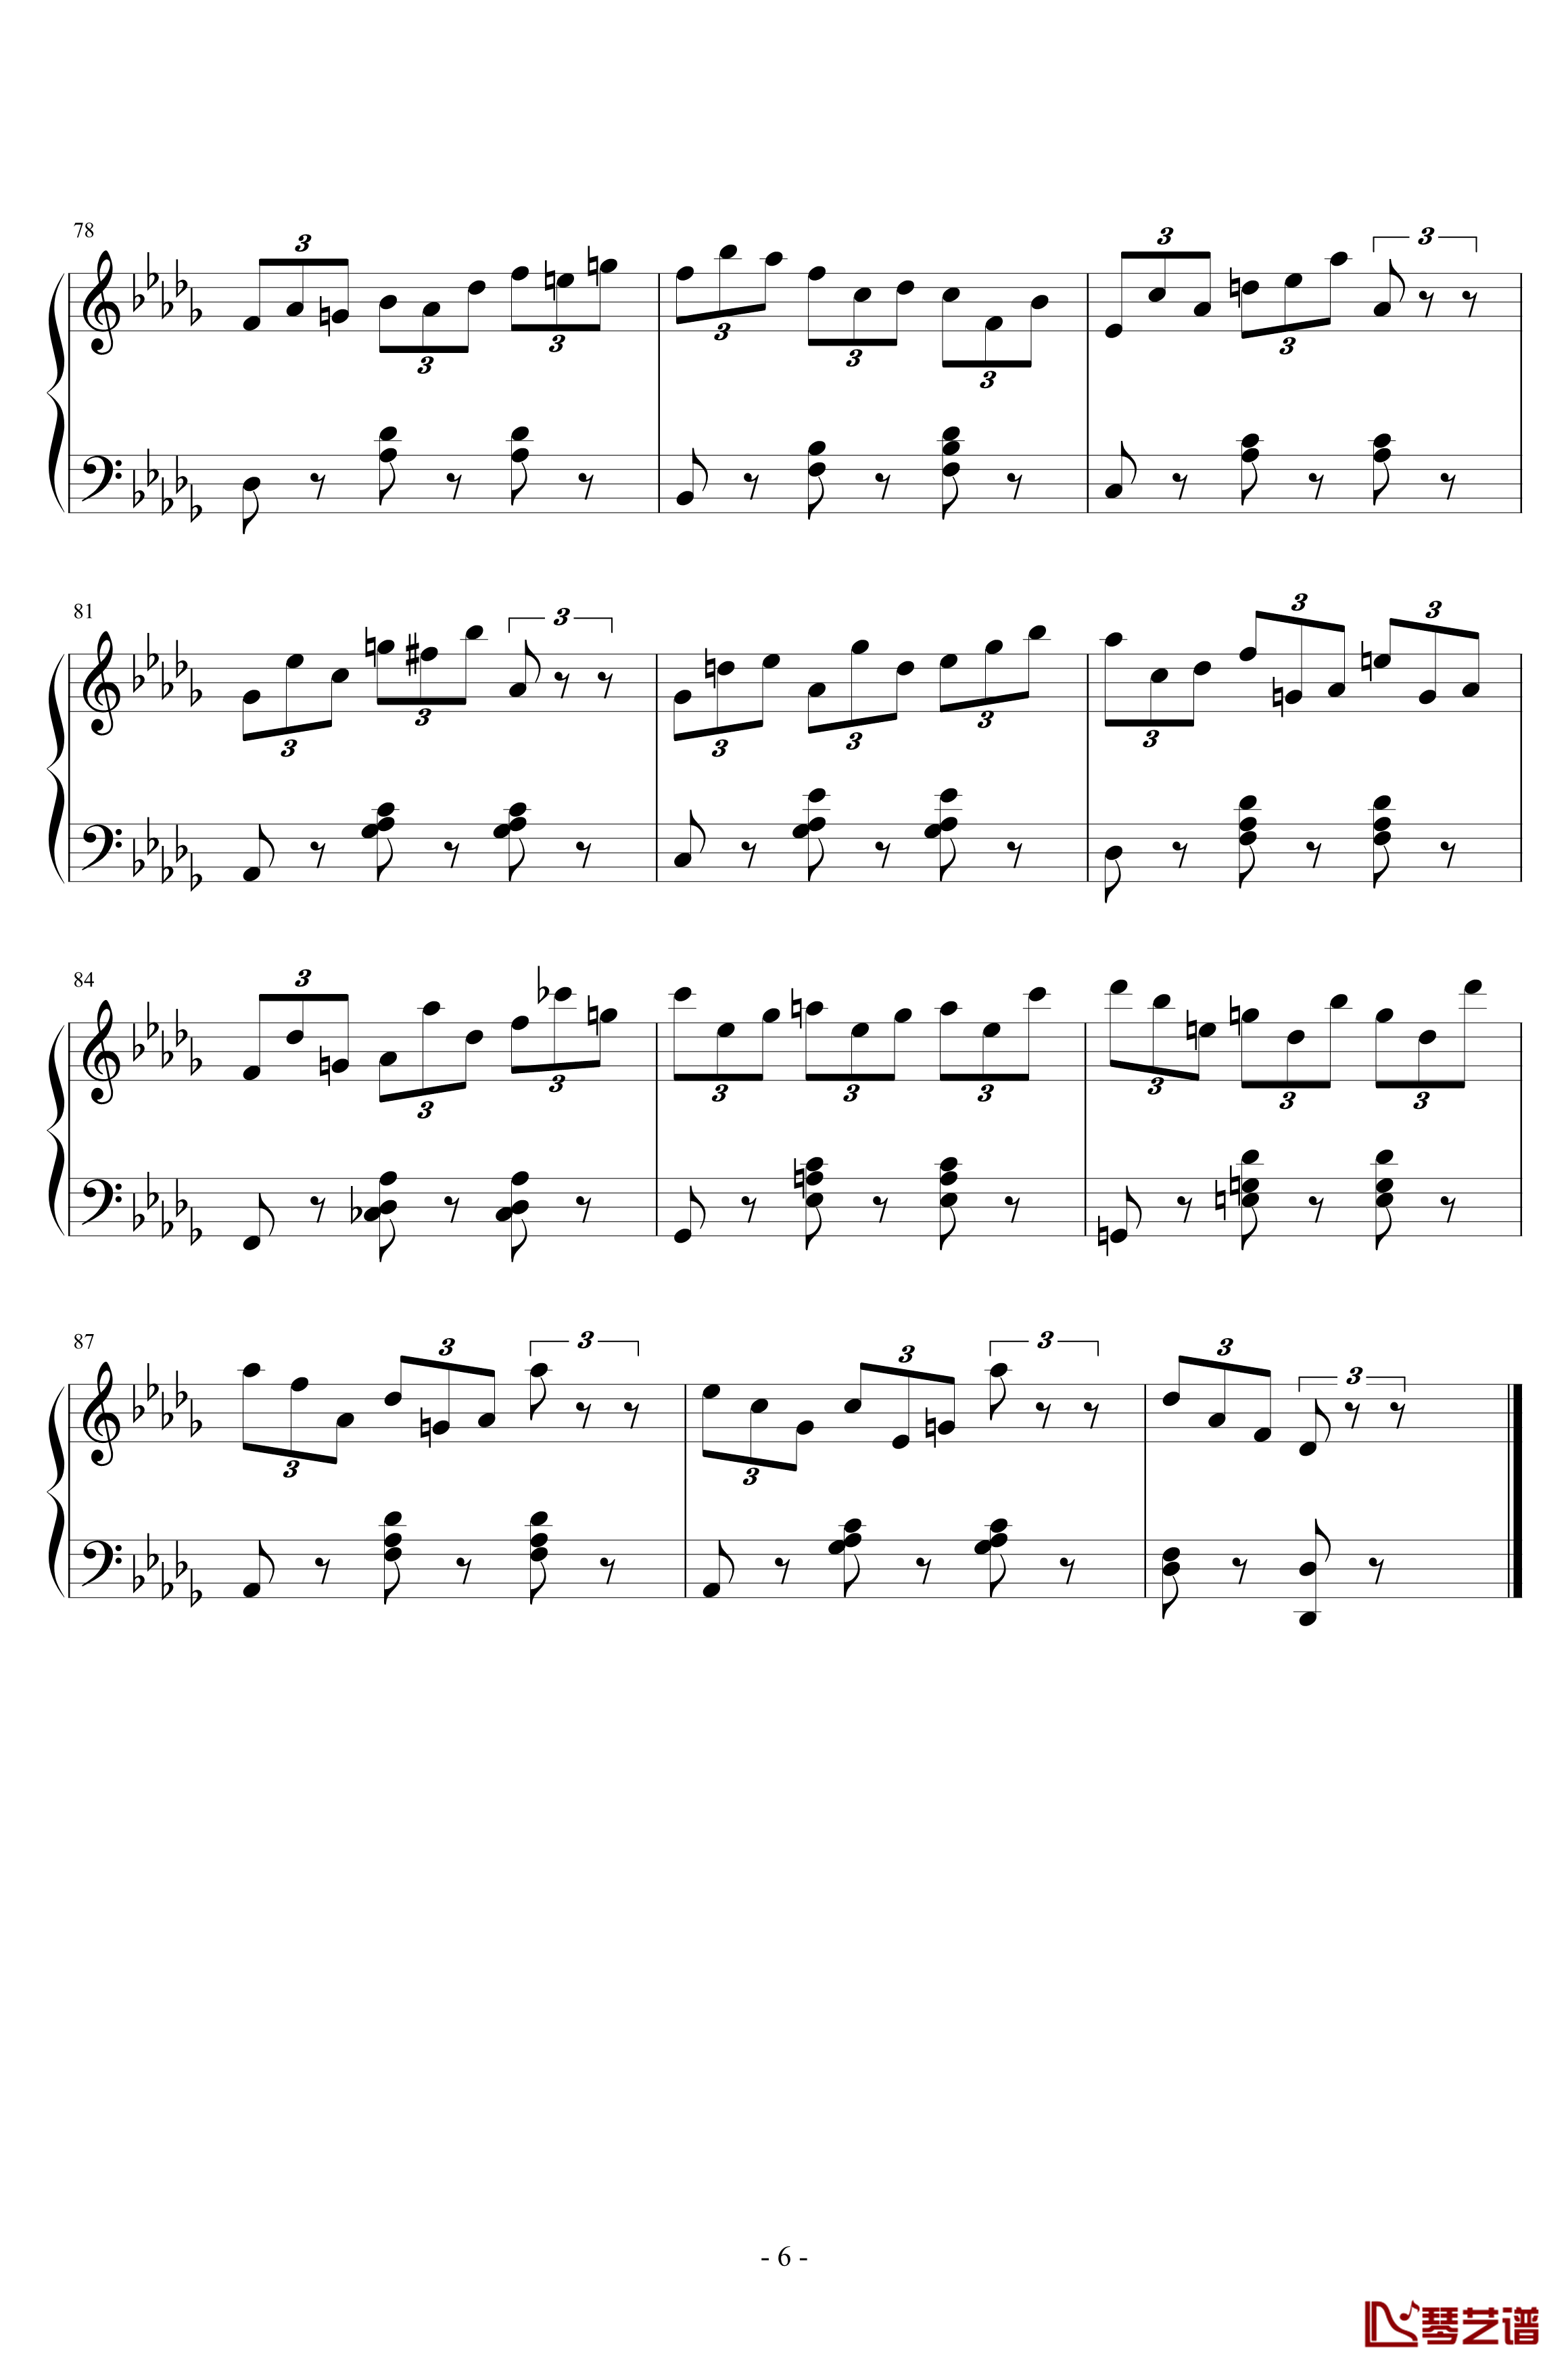 练习曲No.1 Op.6 降D大调练习曲钢琴谱-江畔新绿6